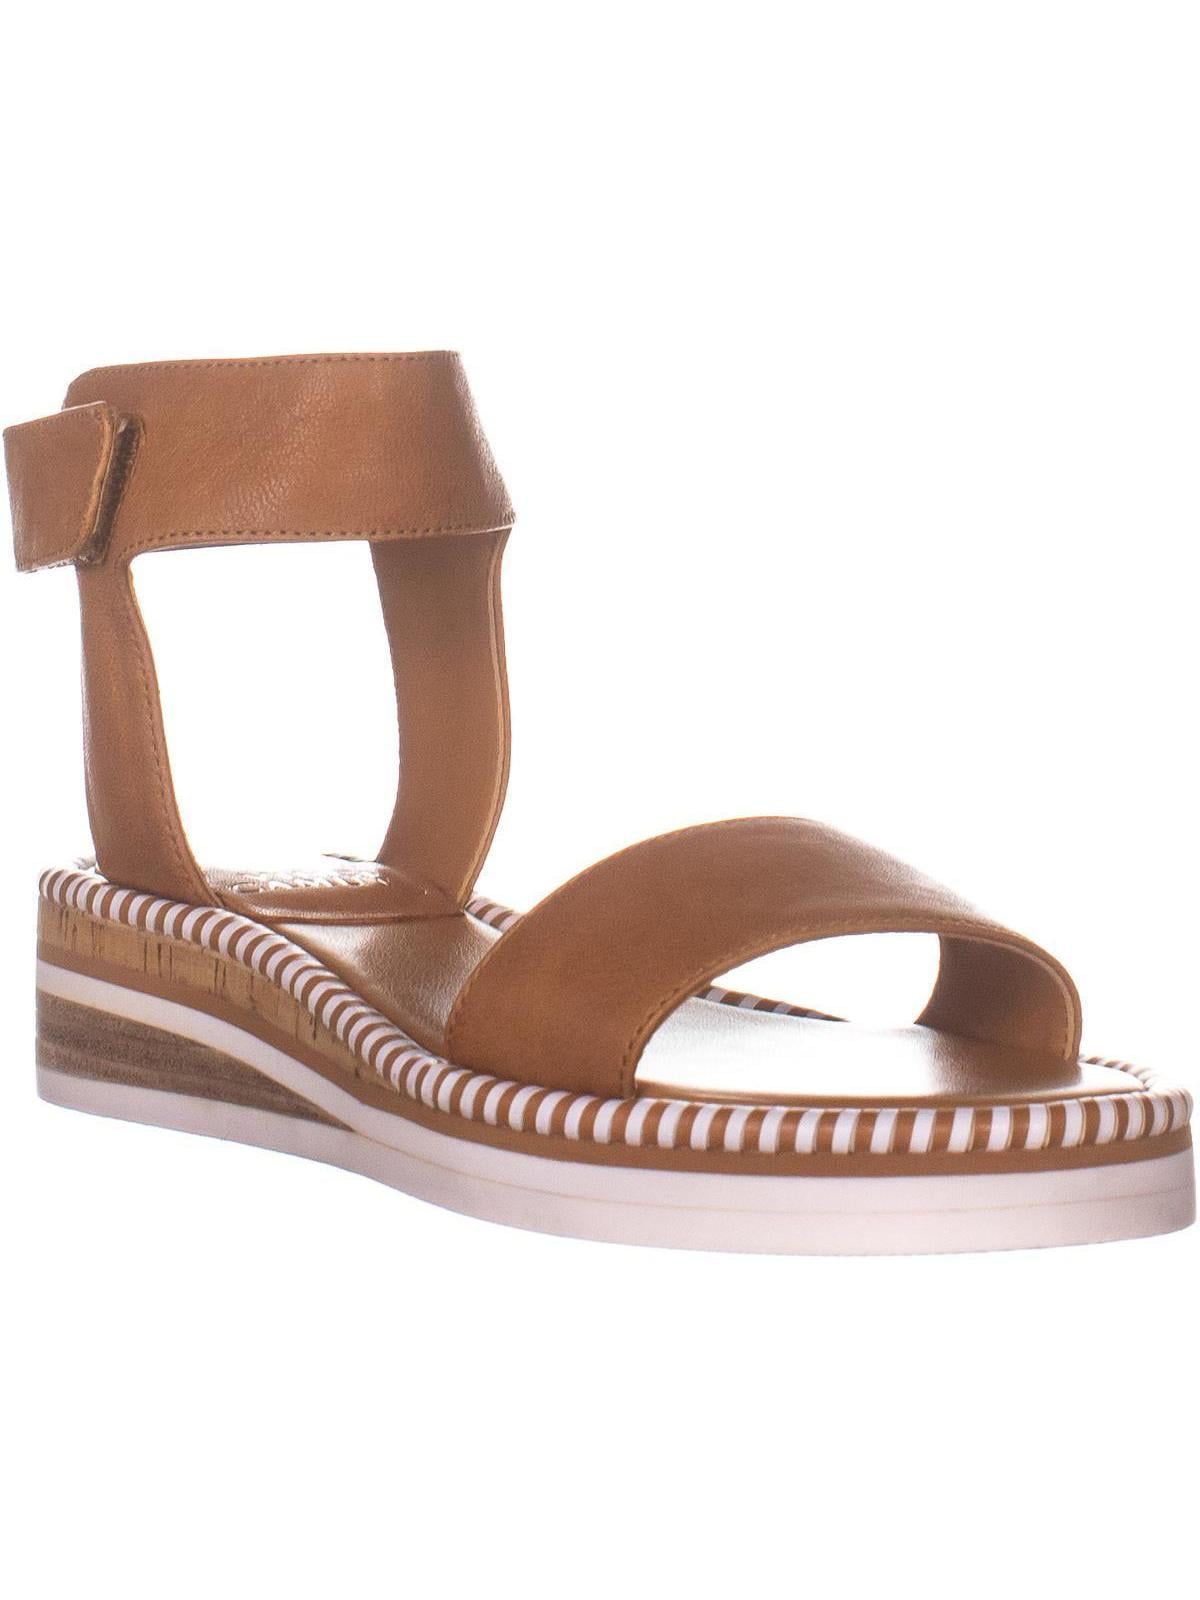 moirina wedge sandal